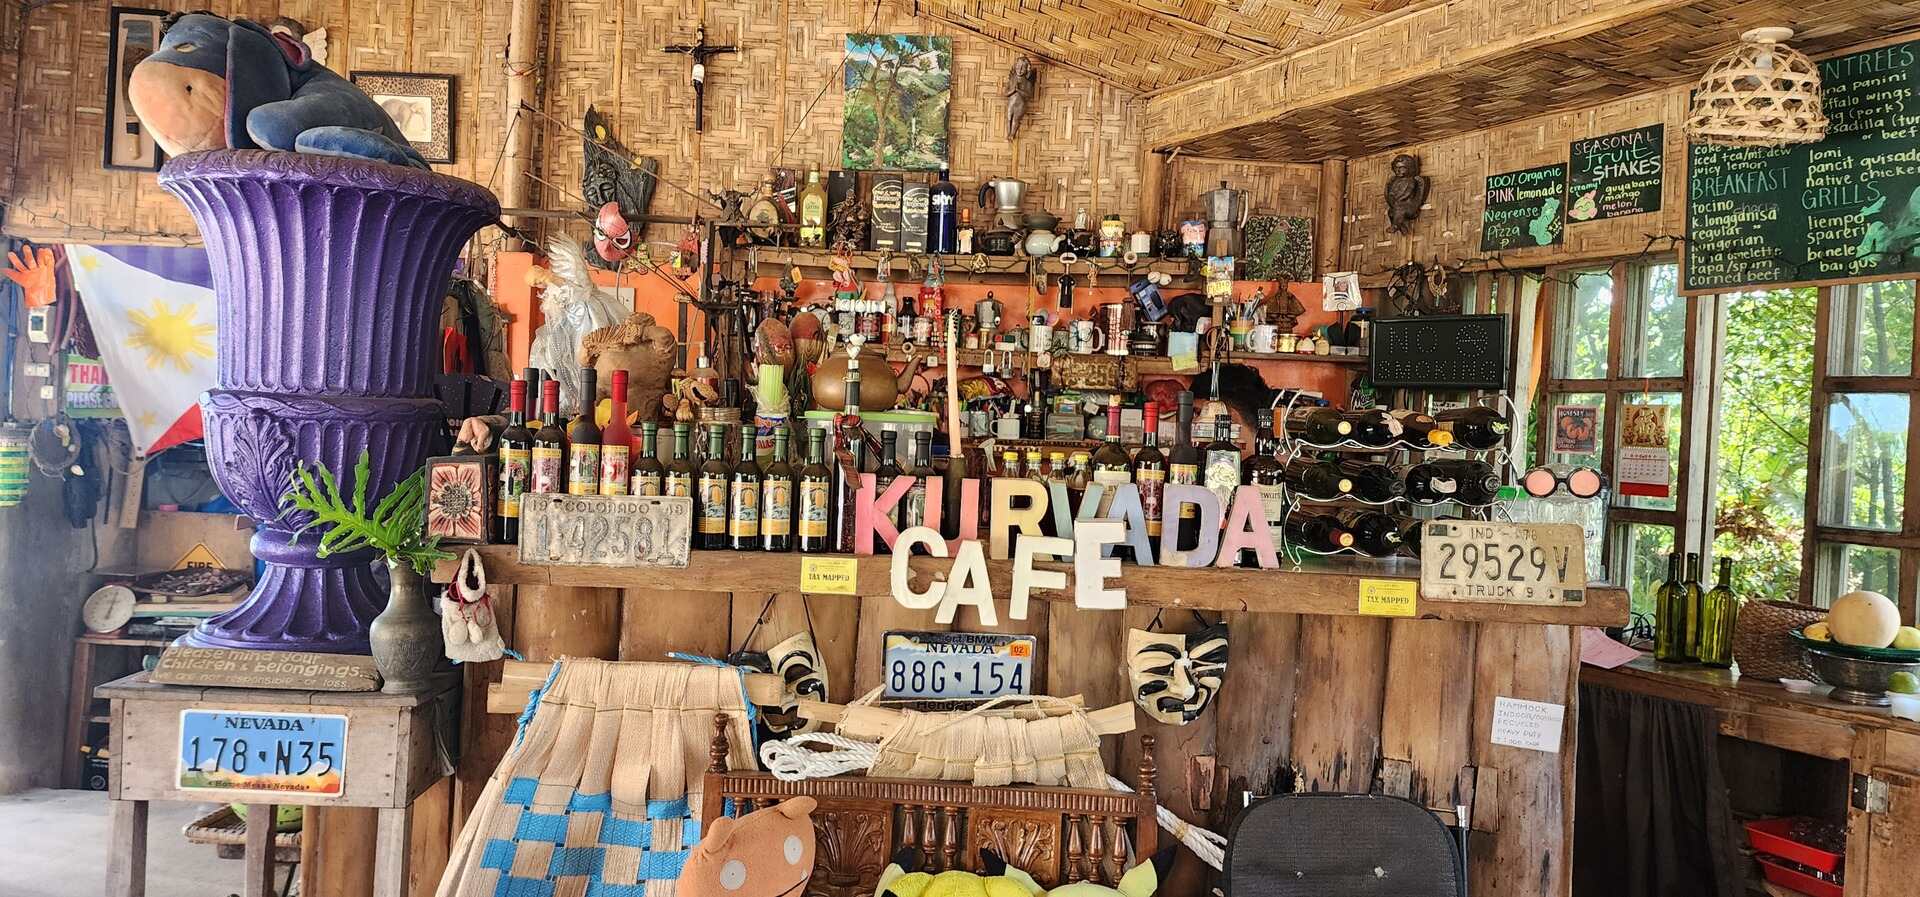 Kurvada-Cafe